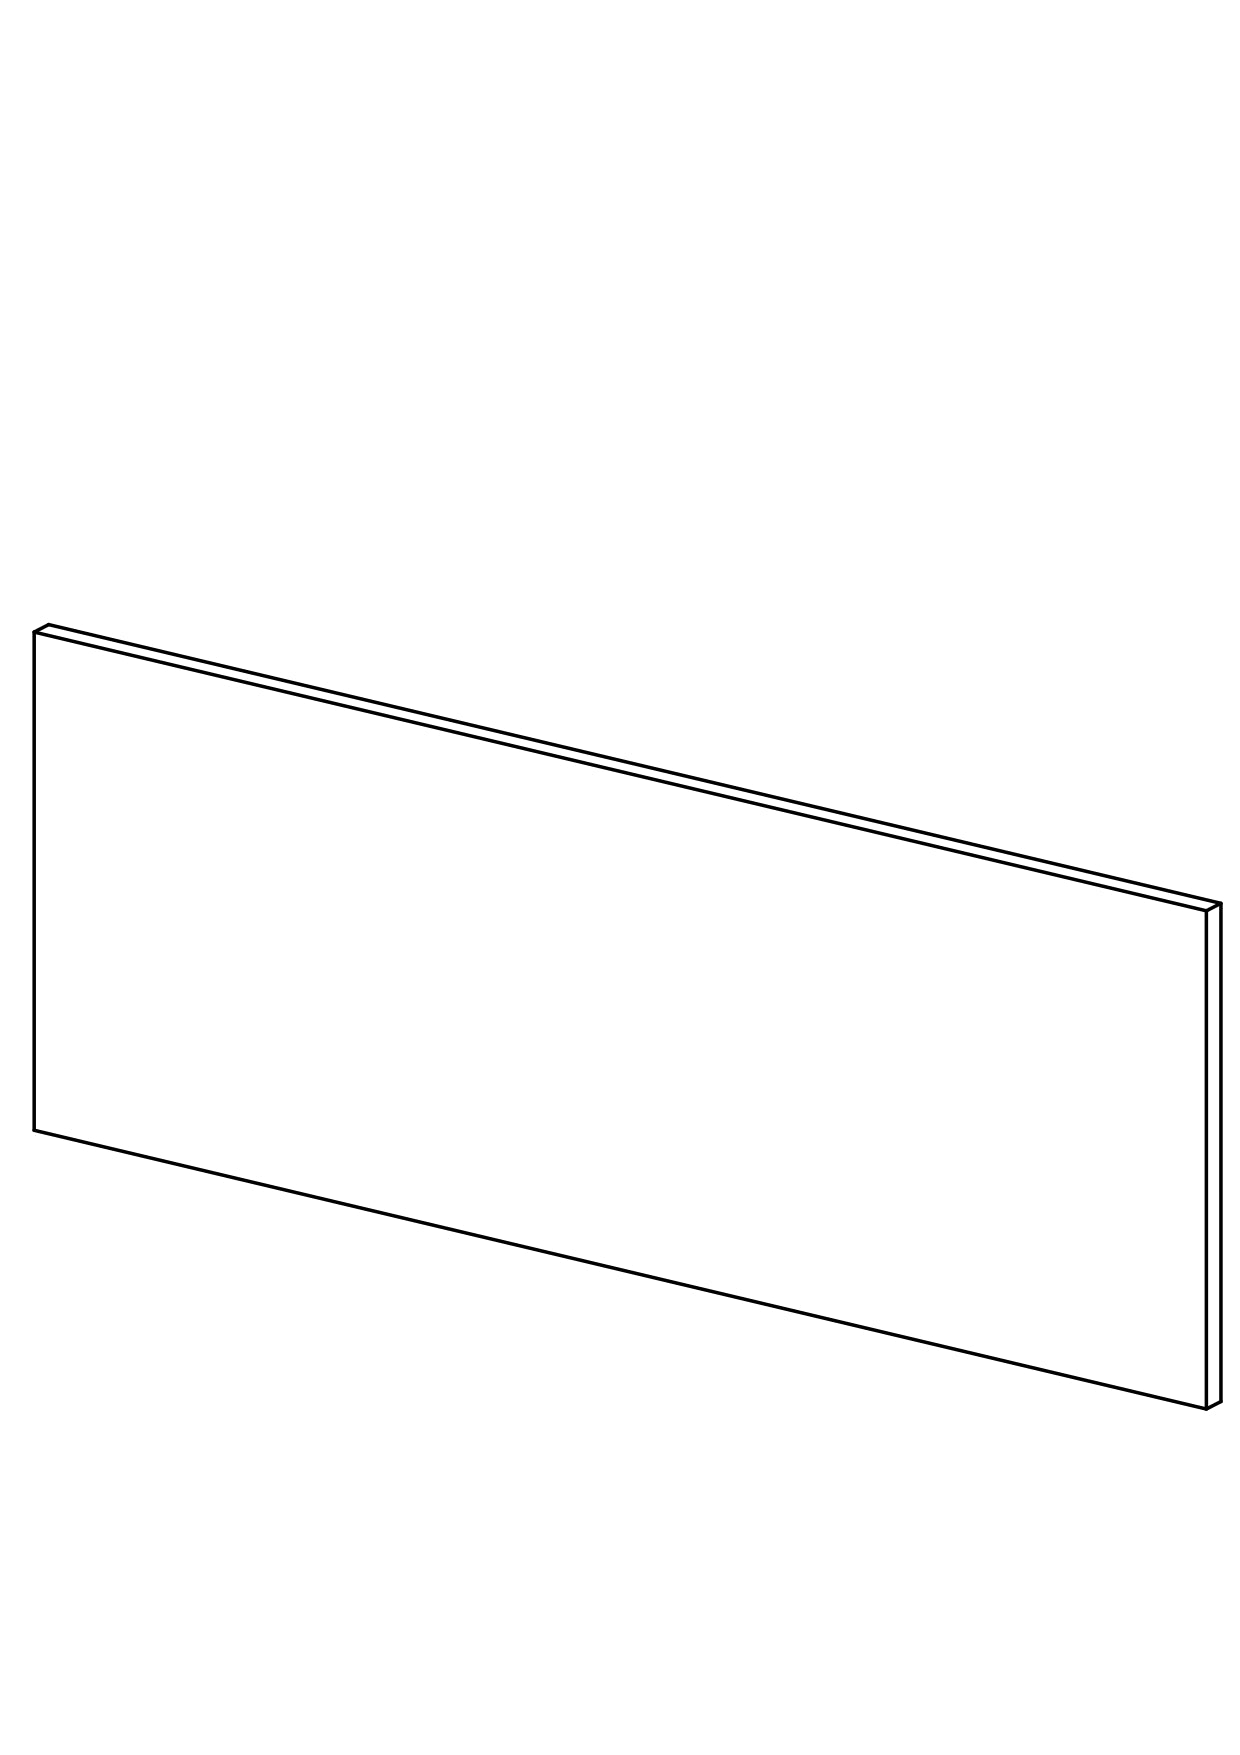 240x90 - Cover Panel - Plain - Timber Veneer - METOD